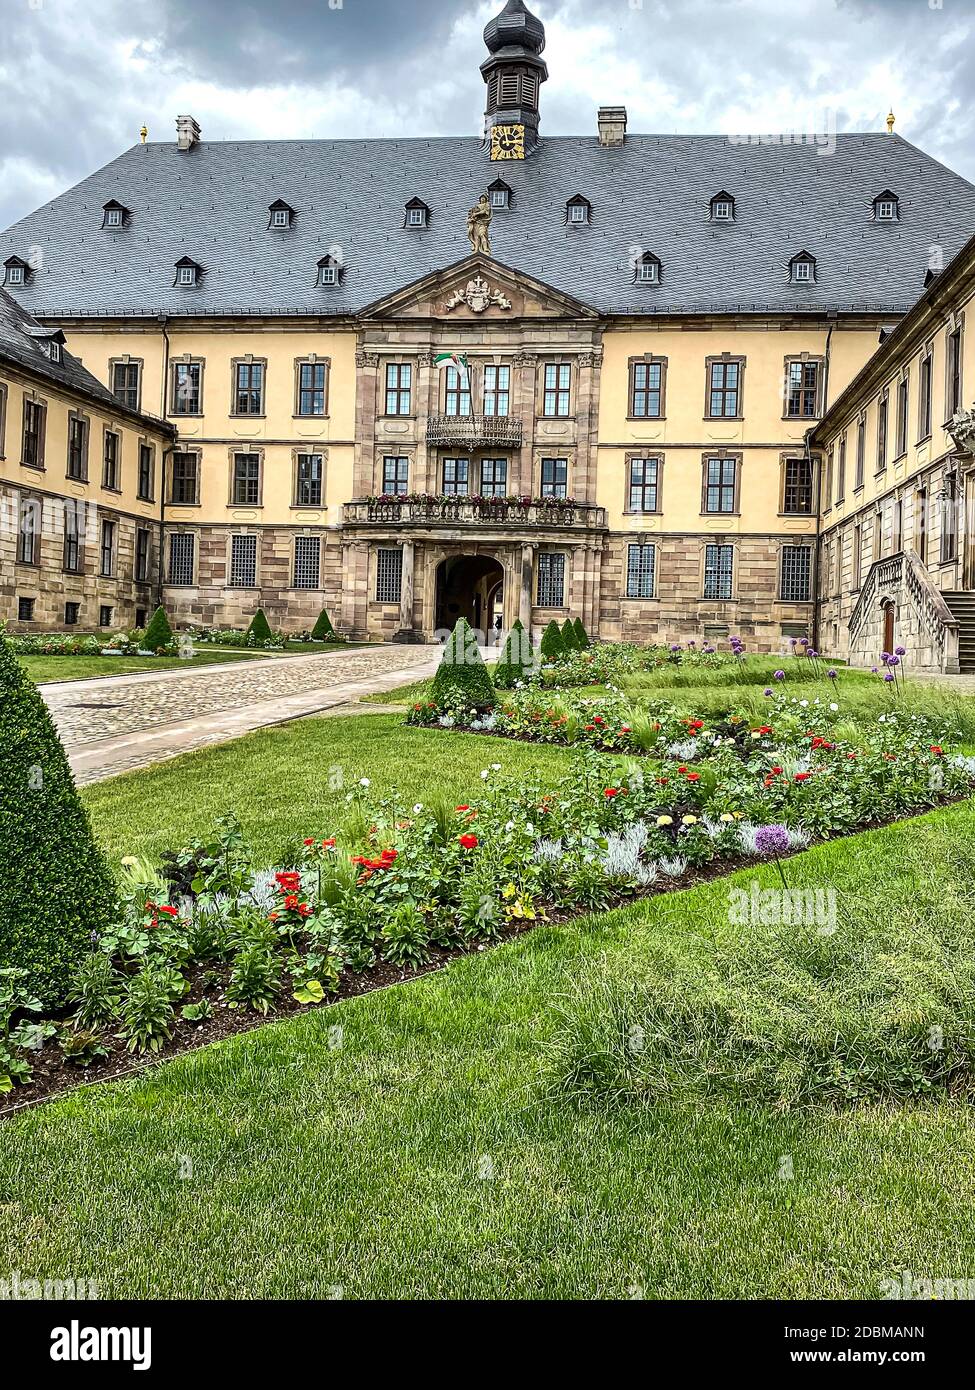 La ville baroque de Fulda château a été construit entre 1706 et 1714 comme résidence princière de la Fulda évêques, Hesse, Germany Banque D'Images